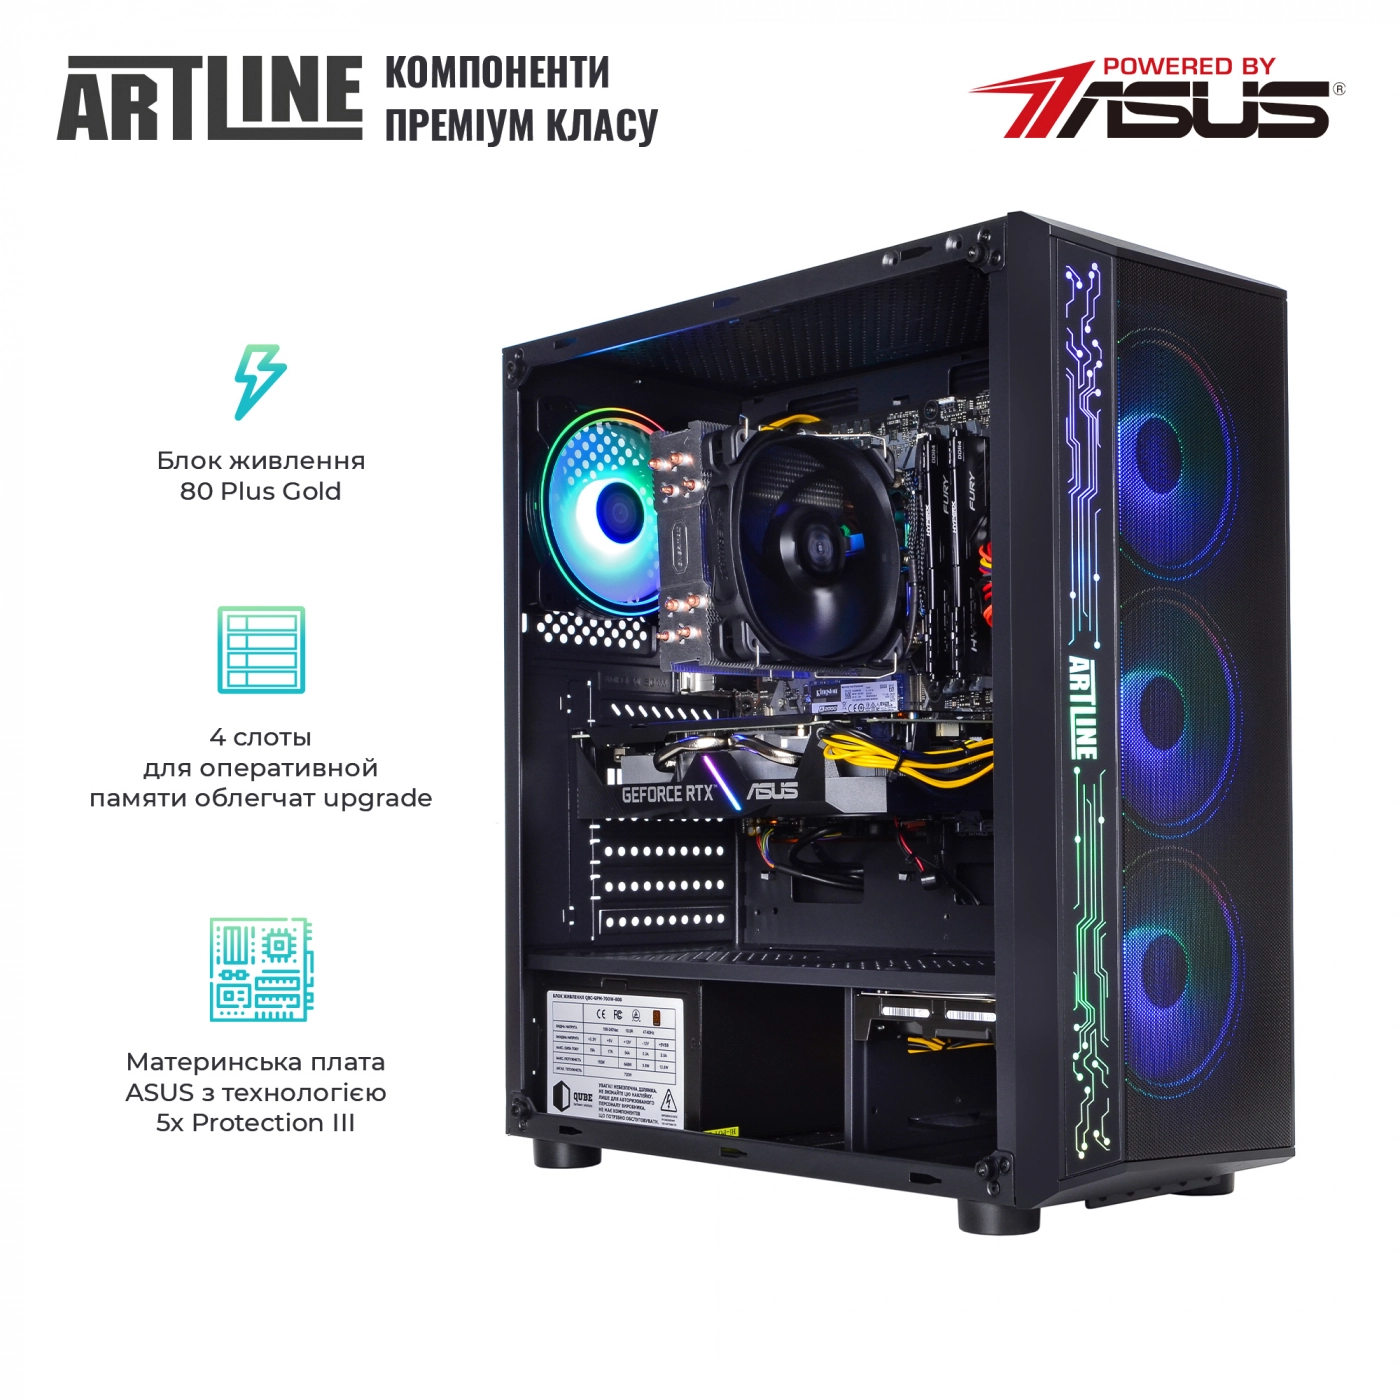 Купить Компьютер ARTLINE Gaming X85v20 - фото 2